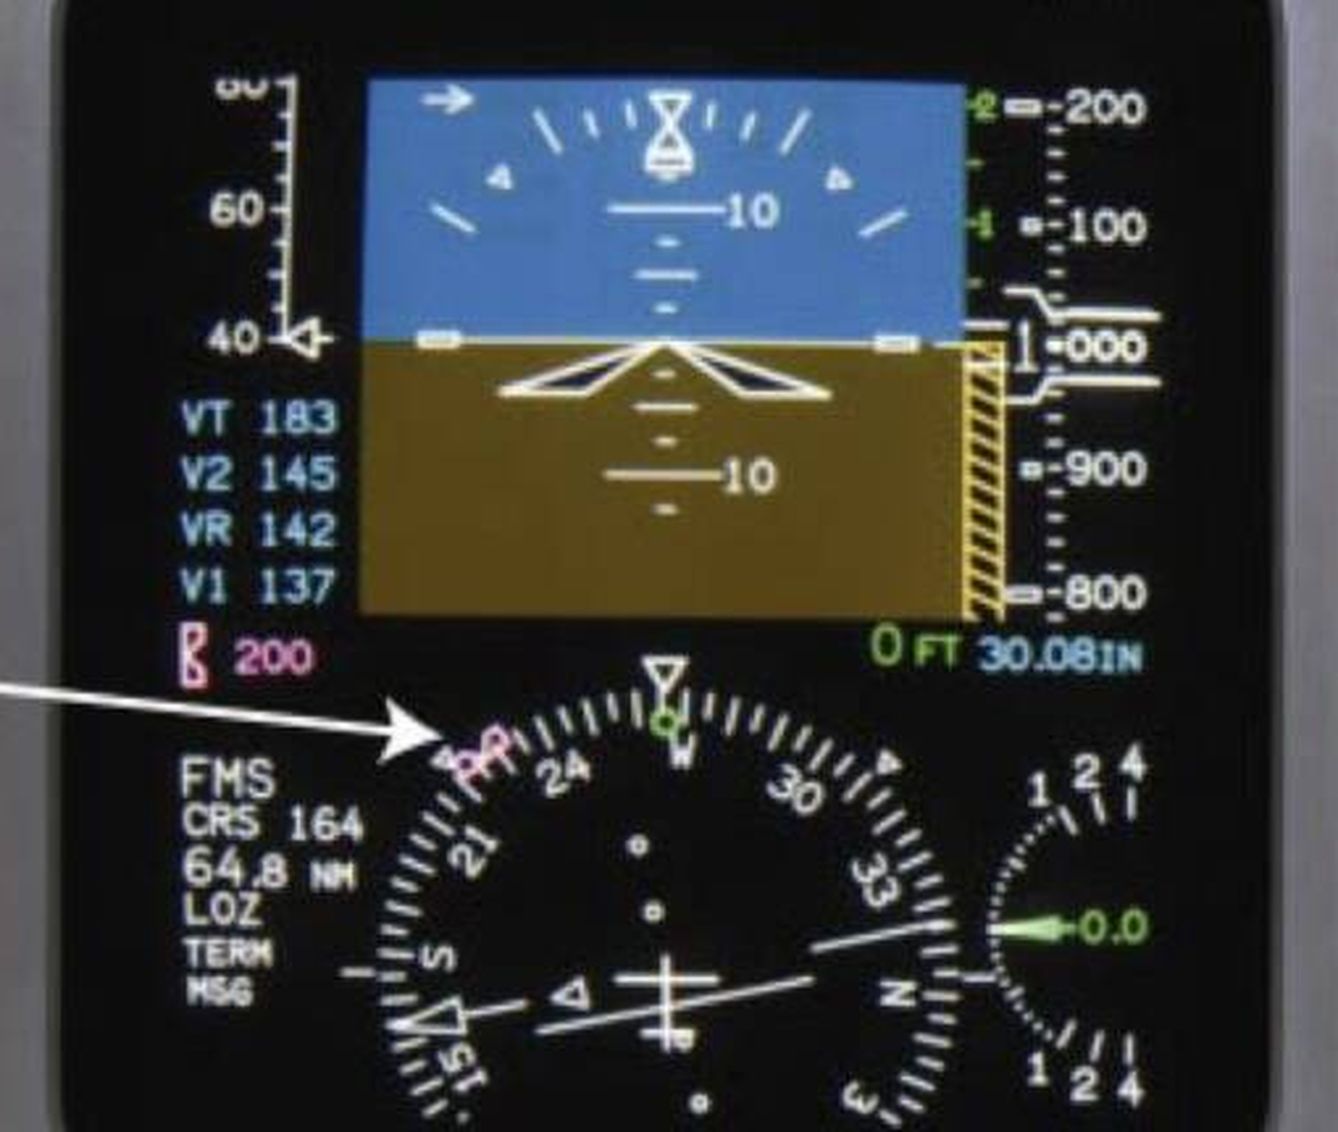 PFD del avión en el que se indica cómo y dónde se muestra el rumbo magnético.